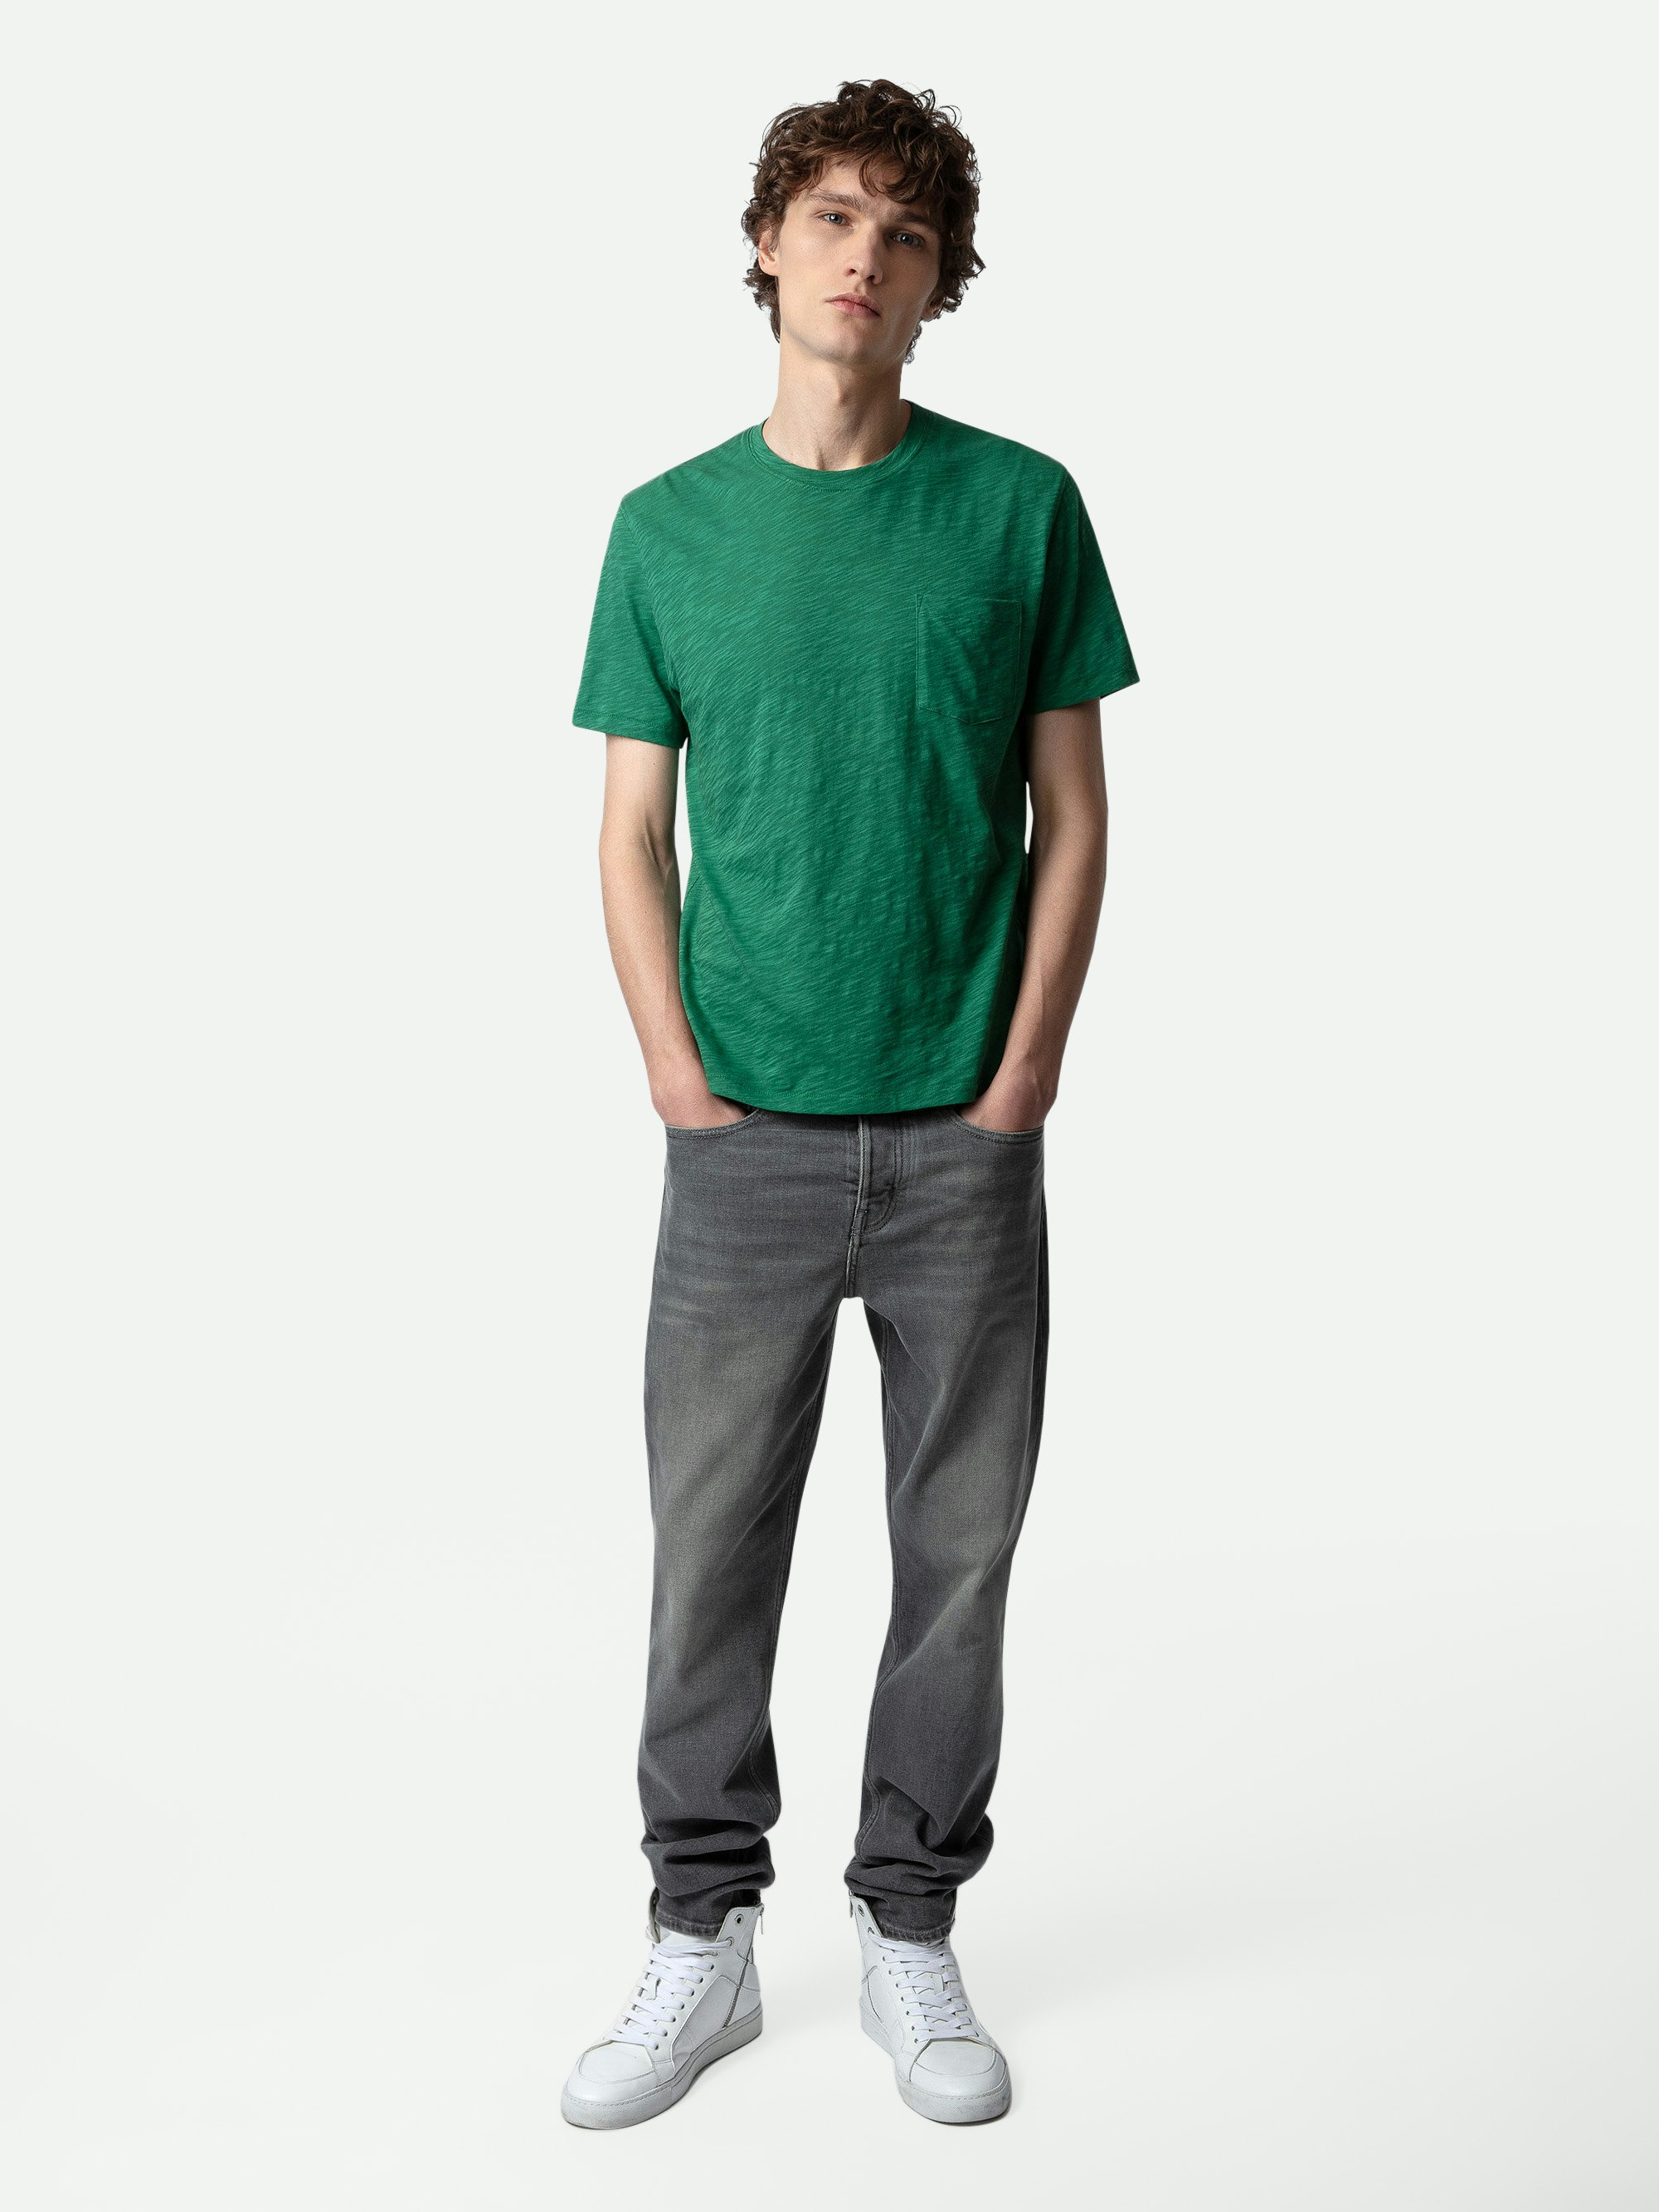 T-Shirt Stockholm Geflammt - Kurzarm-T-Shirt aus geflammter Baumwolle in Grün mit Tasche und Skull-Block-Motiv auf dem Rücken.